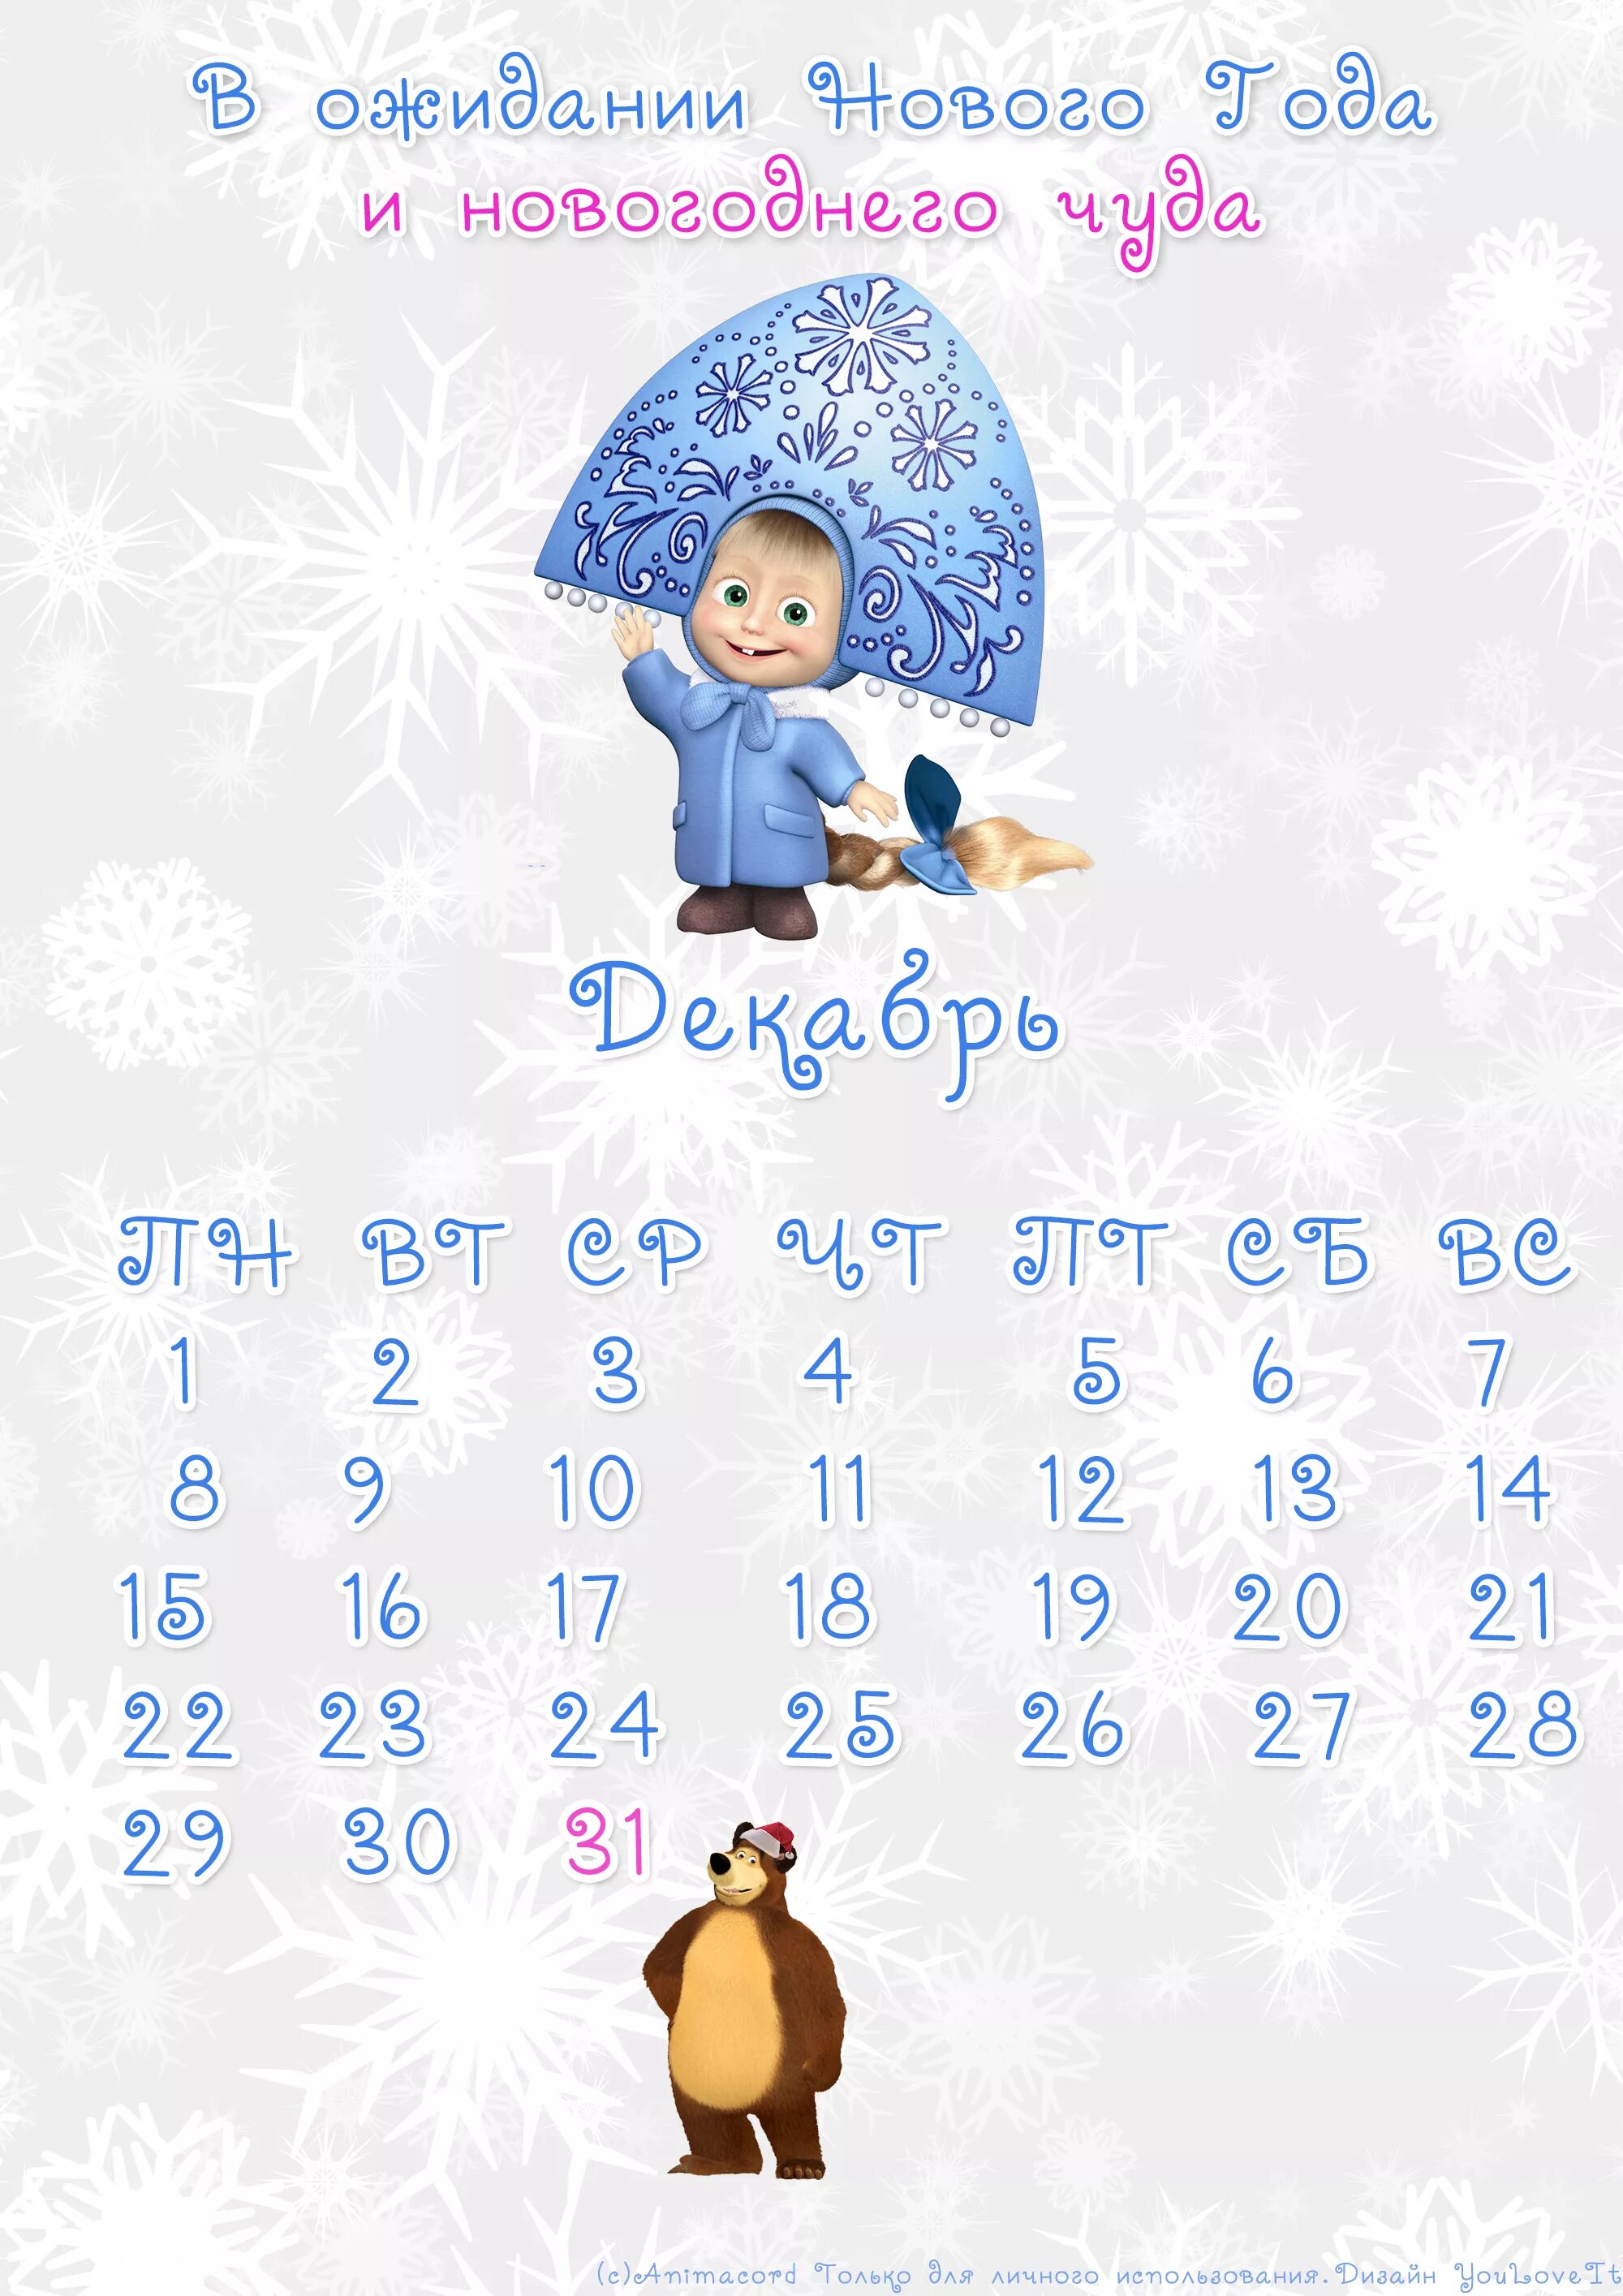 Календарь до нового года. Календарь до новоготг7ода. Календарь до нового года осталось. Календарик дни до нового года.